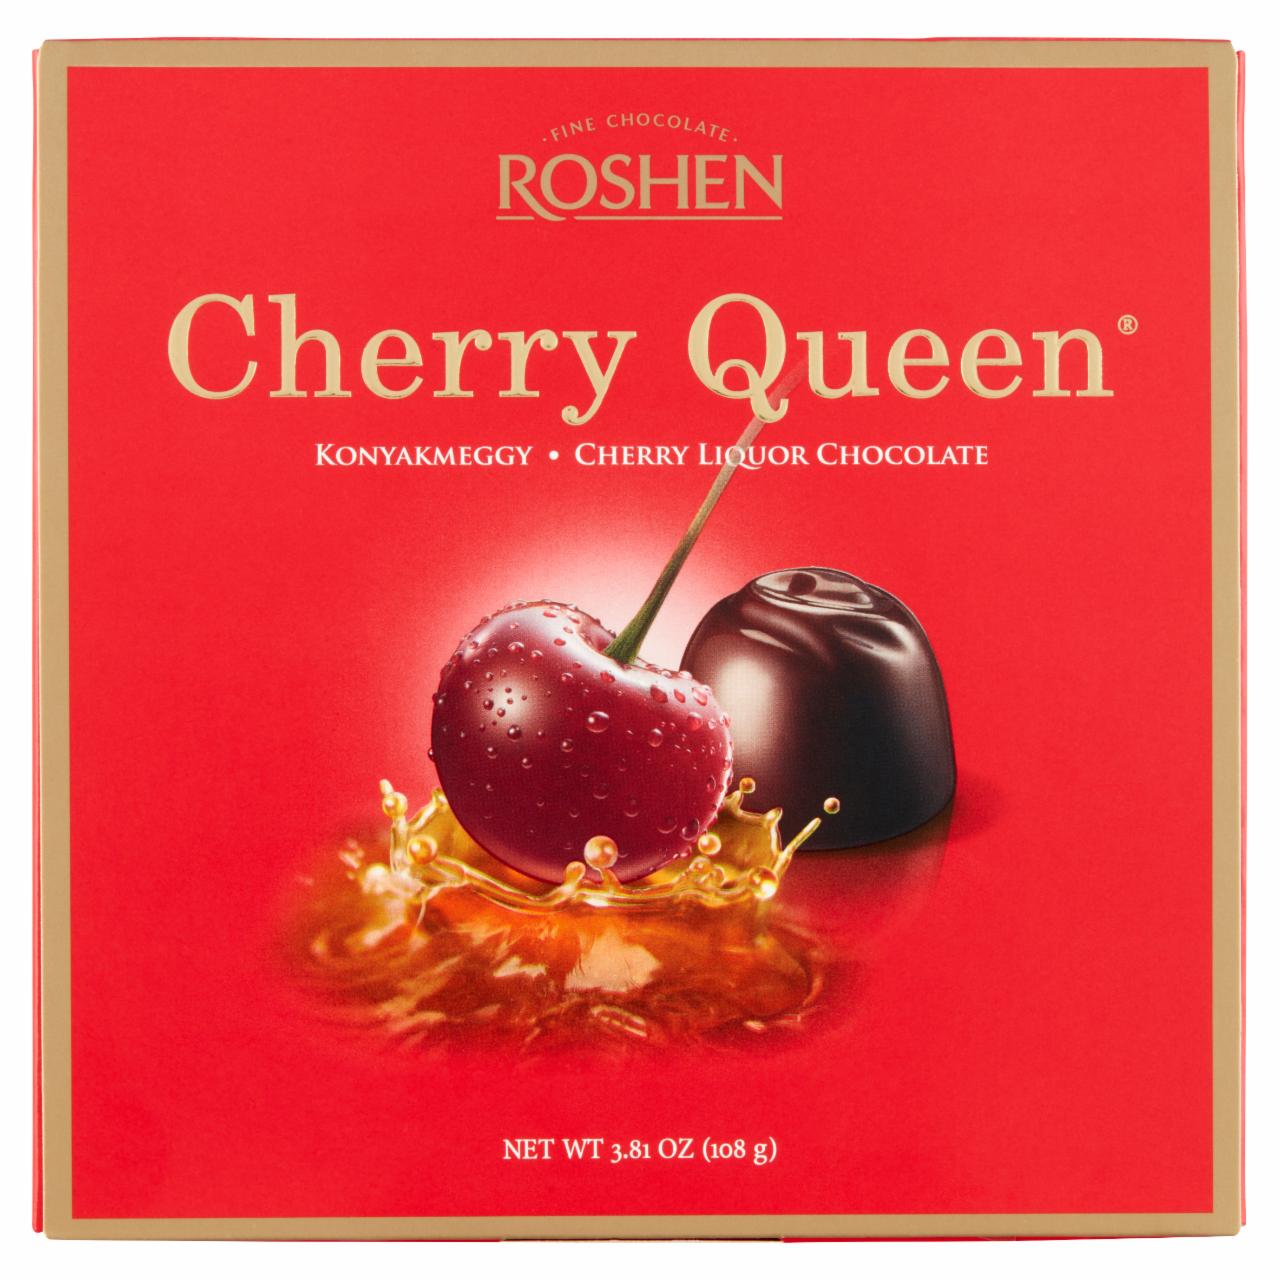 Képek - Cherry Queen konyakmeggy Roshen